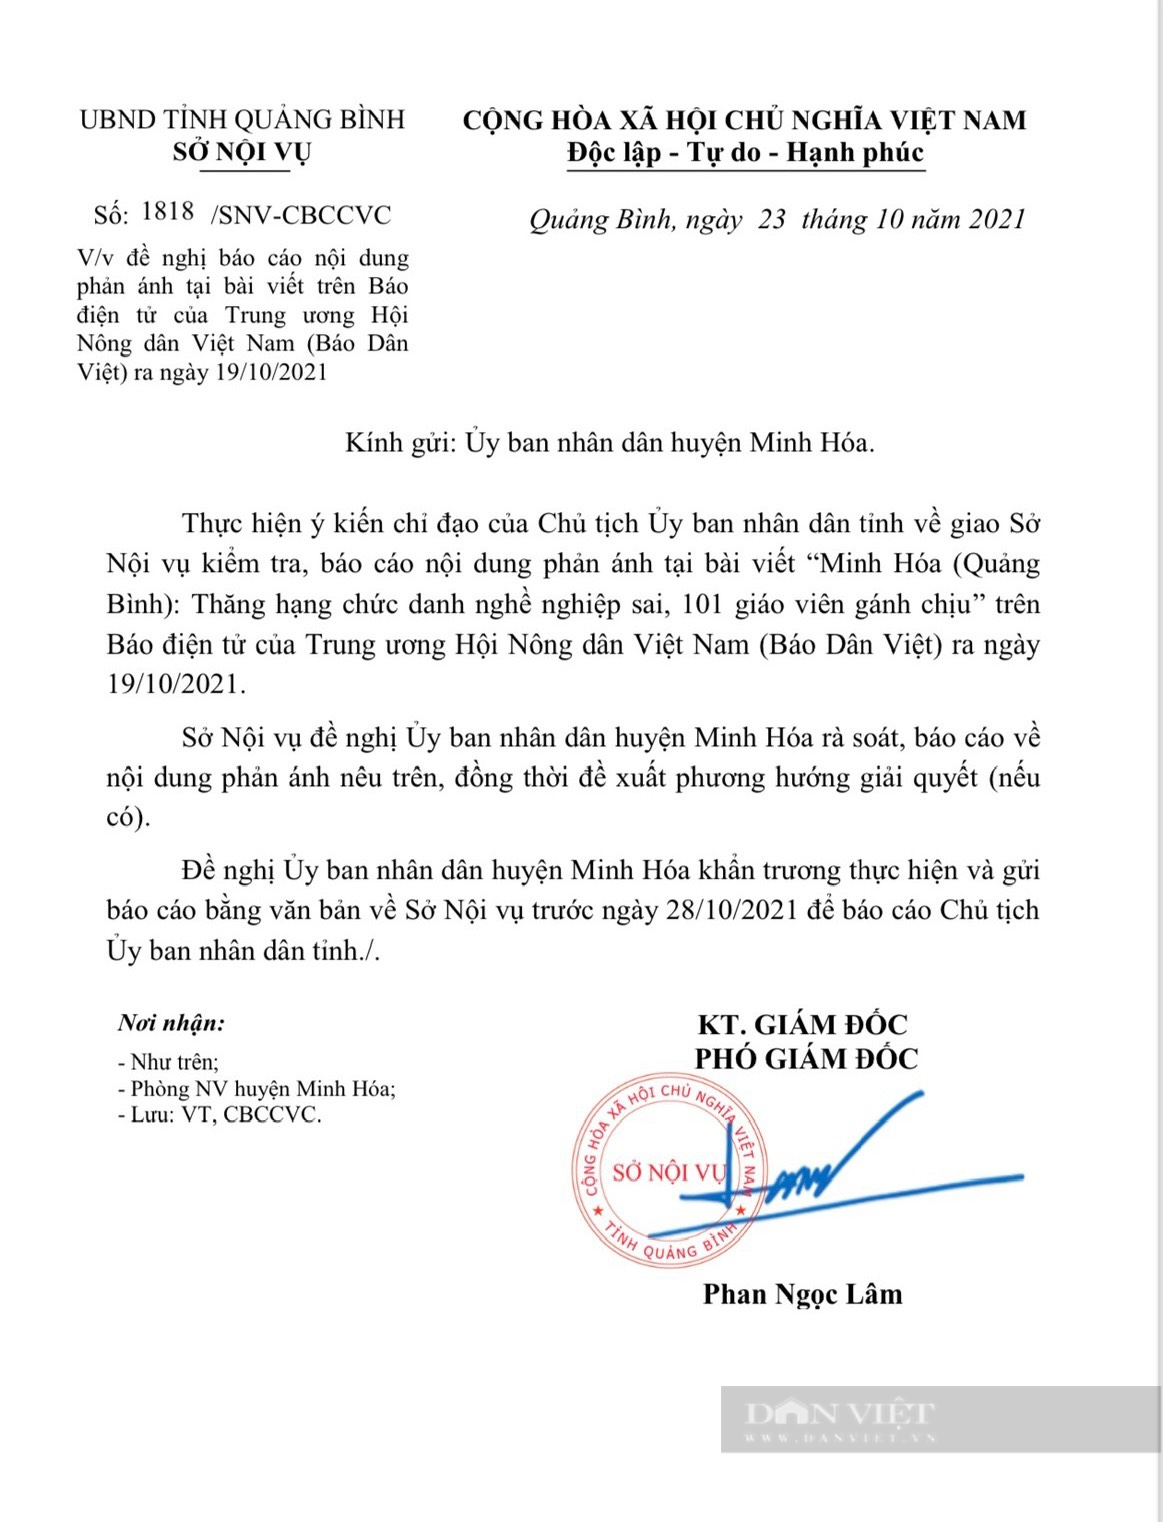 Vụ thăng hạng chức danh nghề nghiệp sai, 101 viên chức gánh chịu: Chủ tịch tỉnh Quảng Bình chỉ đạo kiểm tra - Ảnh 1.